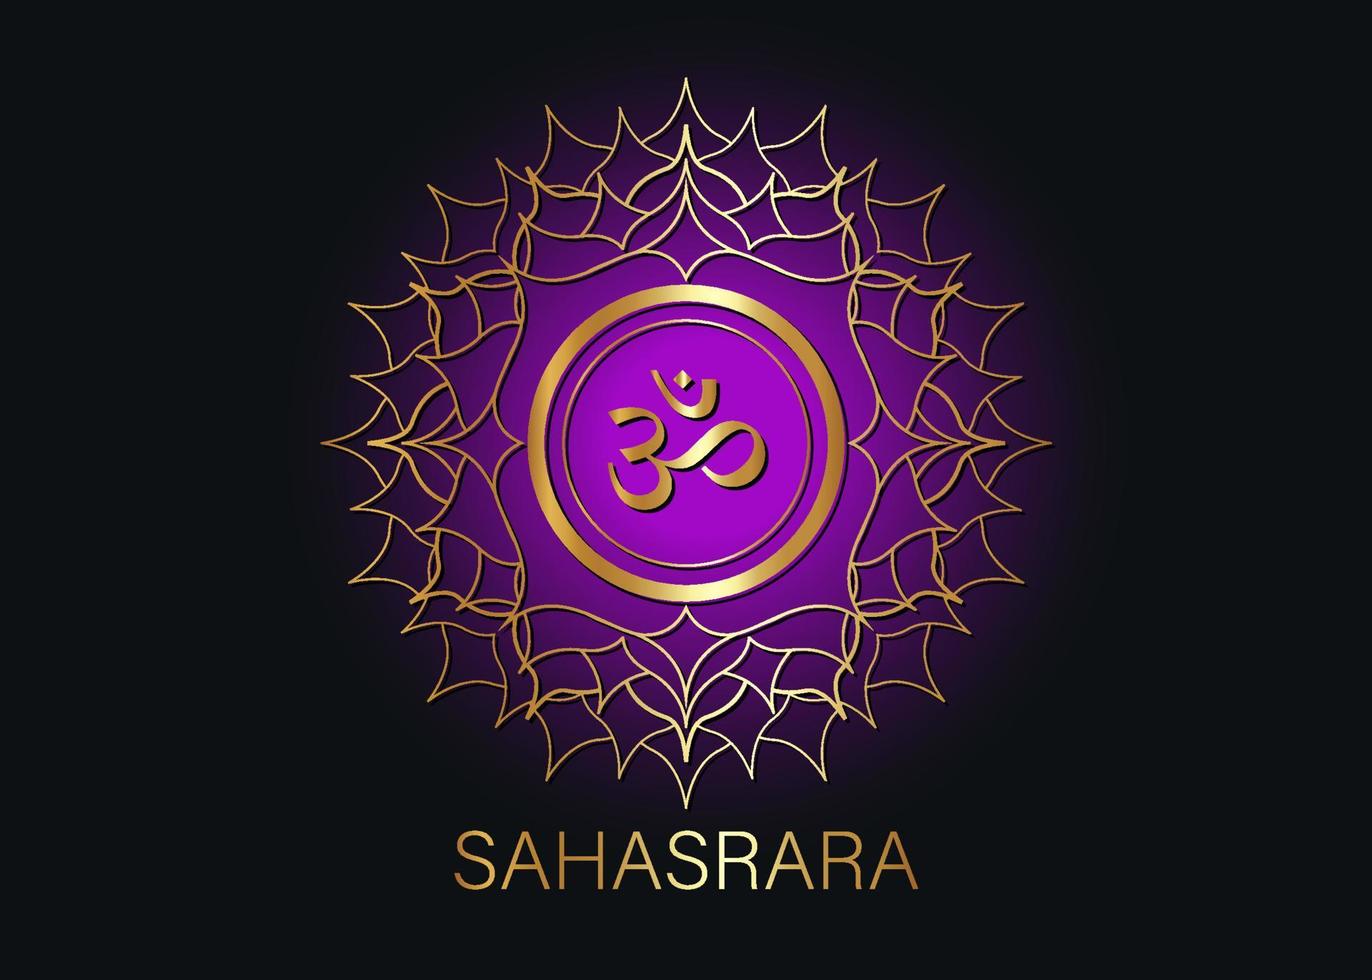 settimo chakra modello di logo sahasrara. simbolo del chakra della corona, meditazione del segno sacrale dorato viola, icona rotonda della mandala di yoga. simbolo d'oro om al centro, vettore isolato su sfondo nero